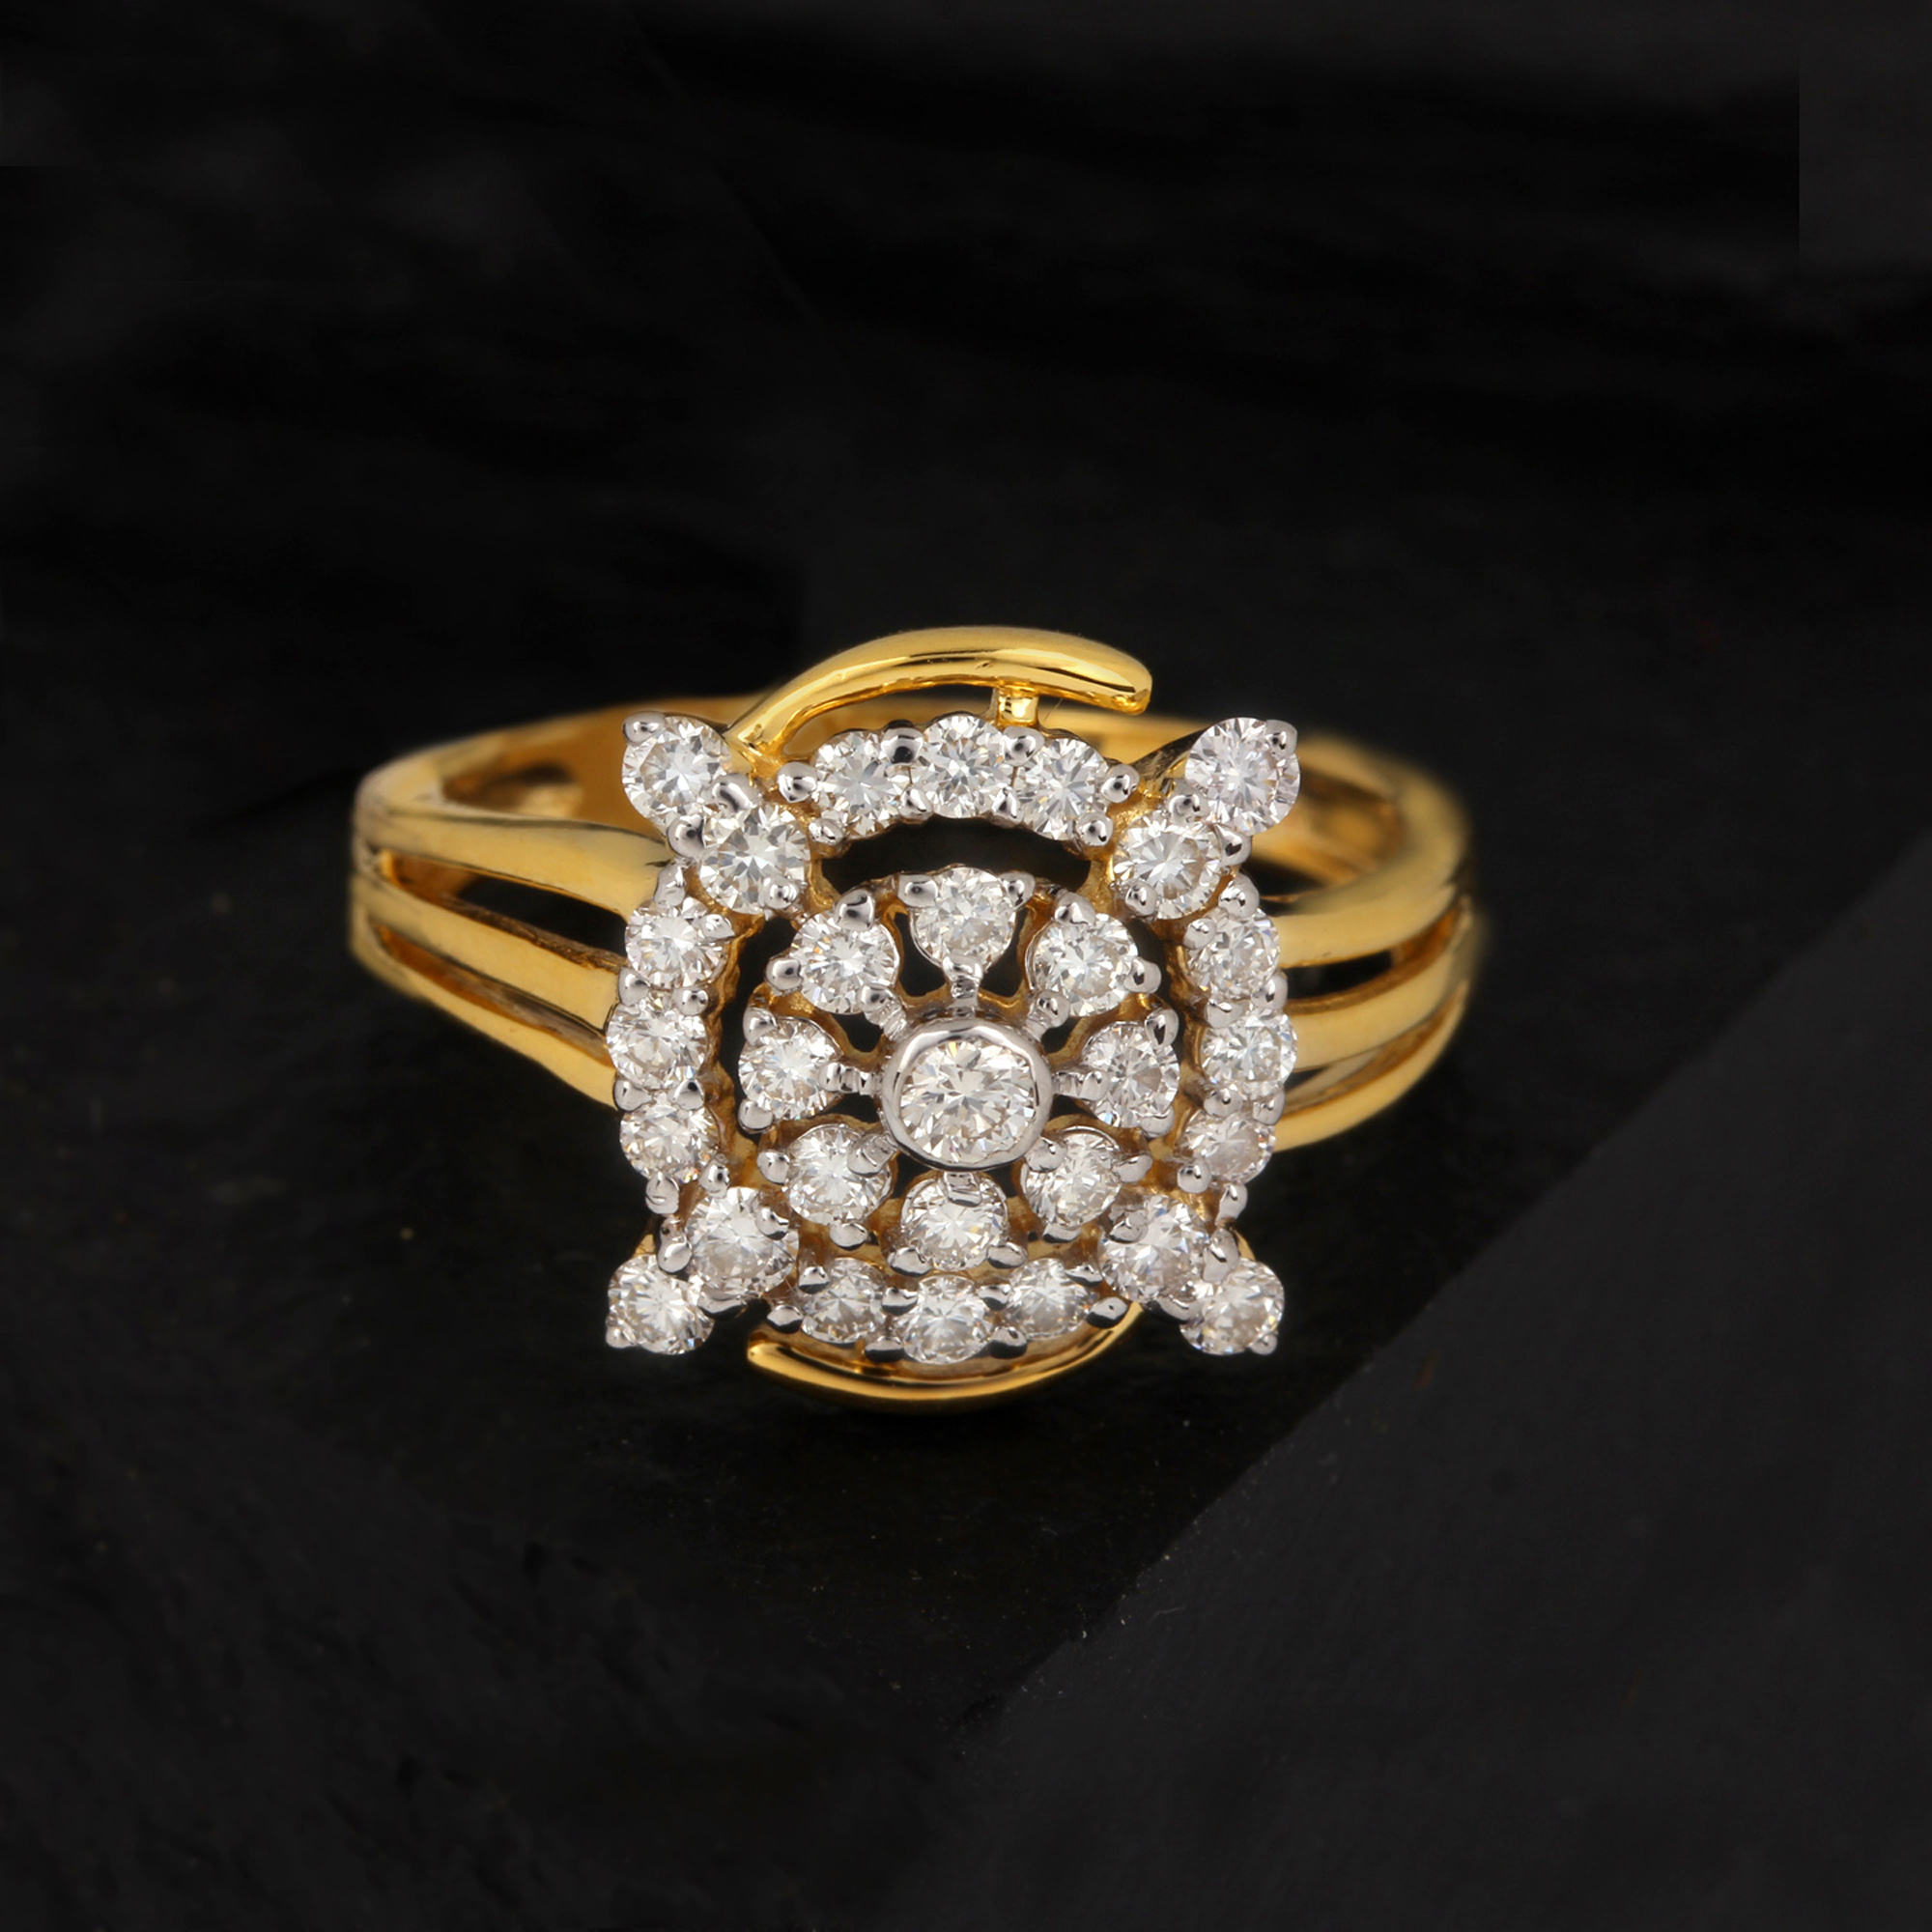 Genuine Diamond Ring In Gold